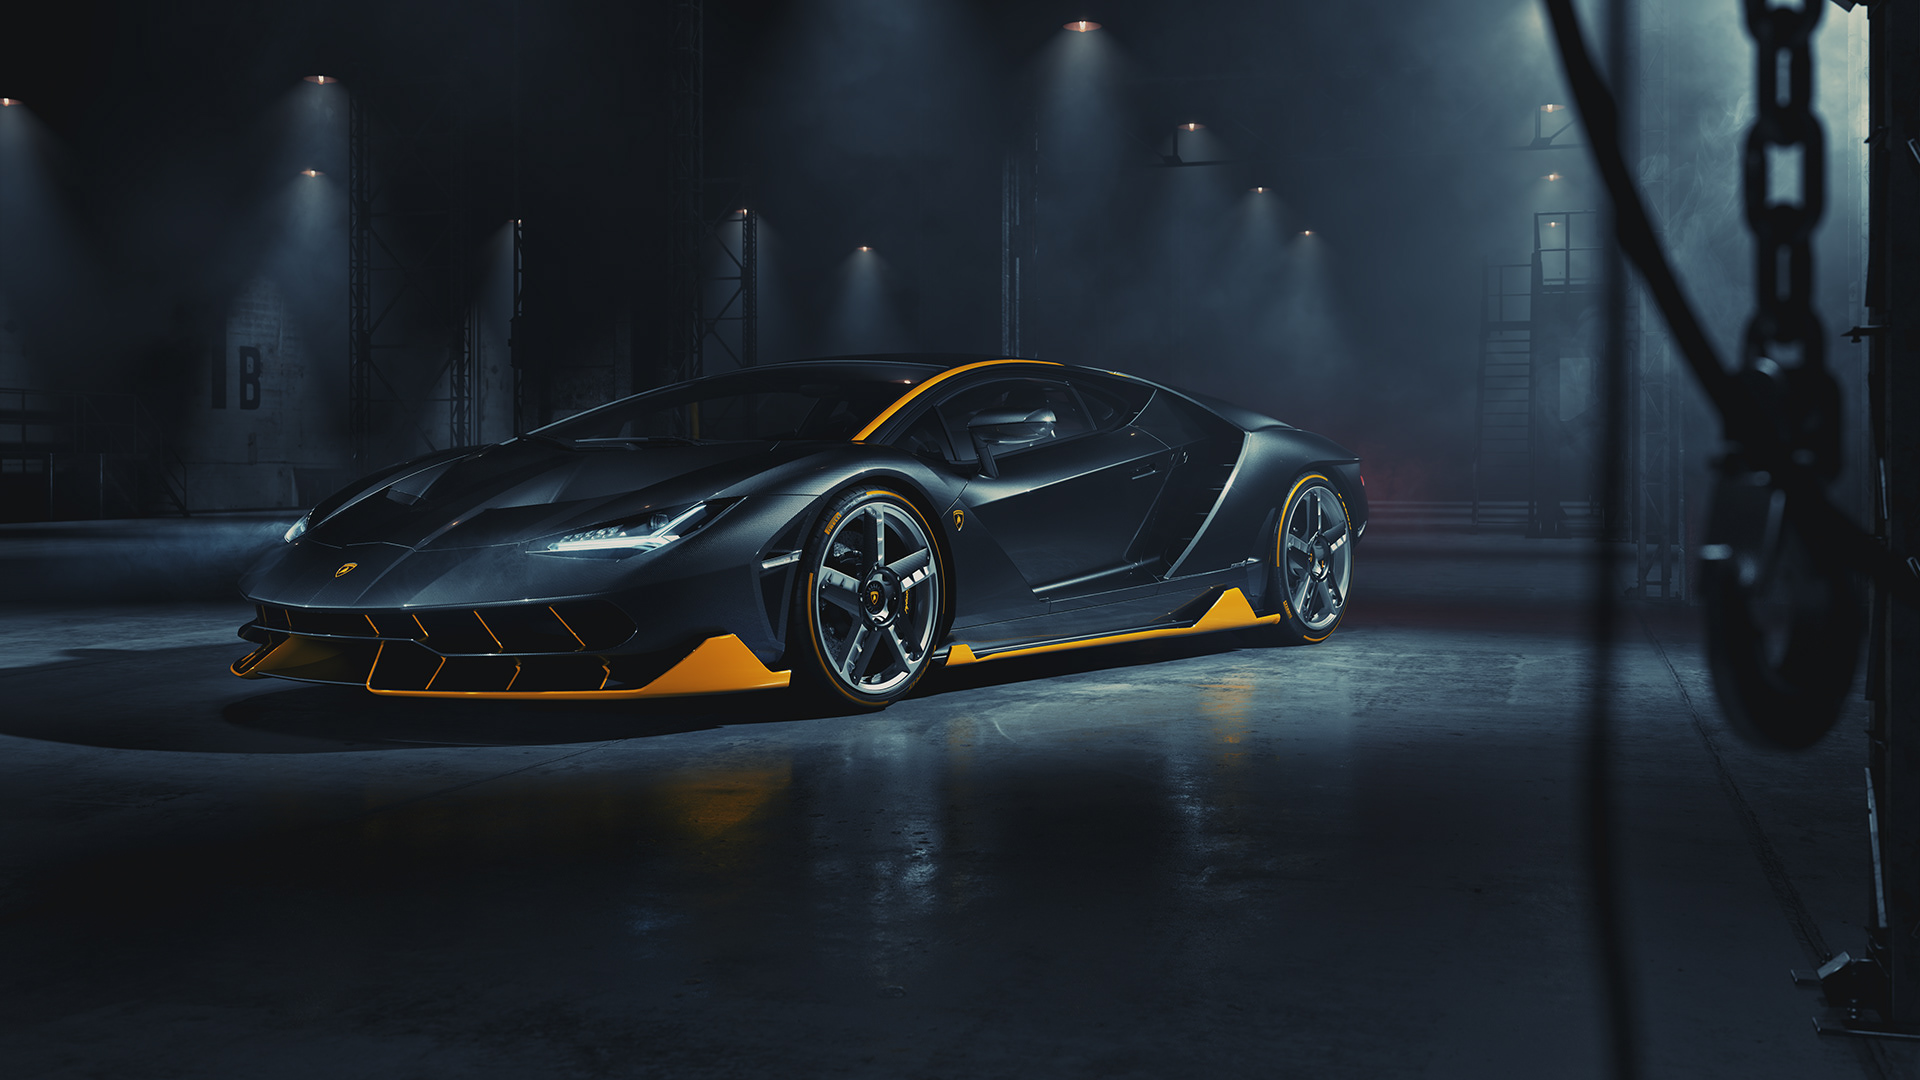 Lamborghini Centenario \u2013 Full CGI on Behance1f33d591477621.5e32d3fdbb403.jpg